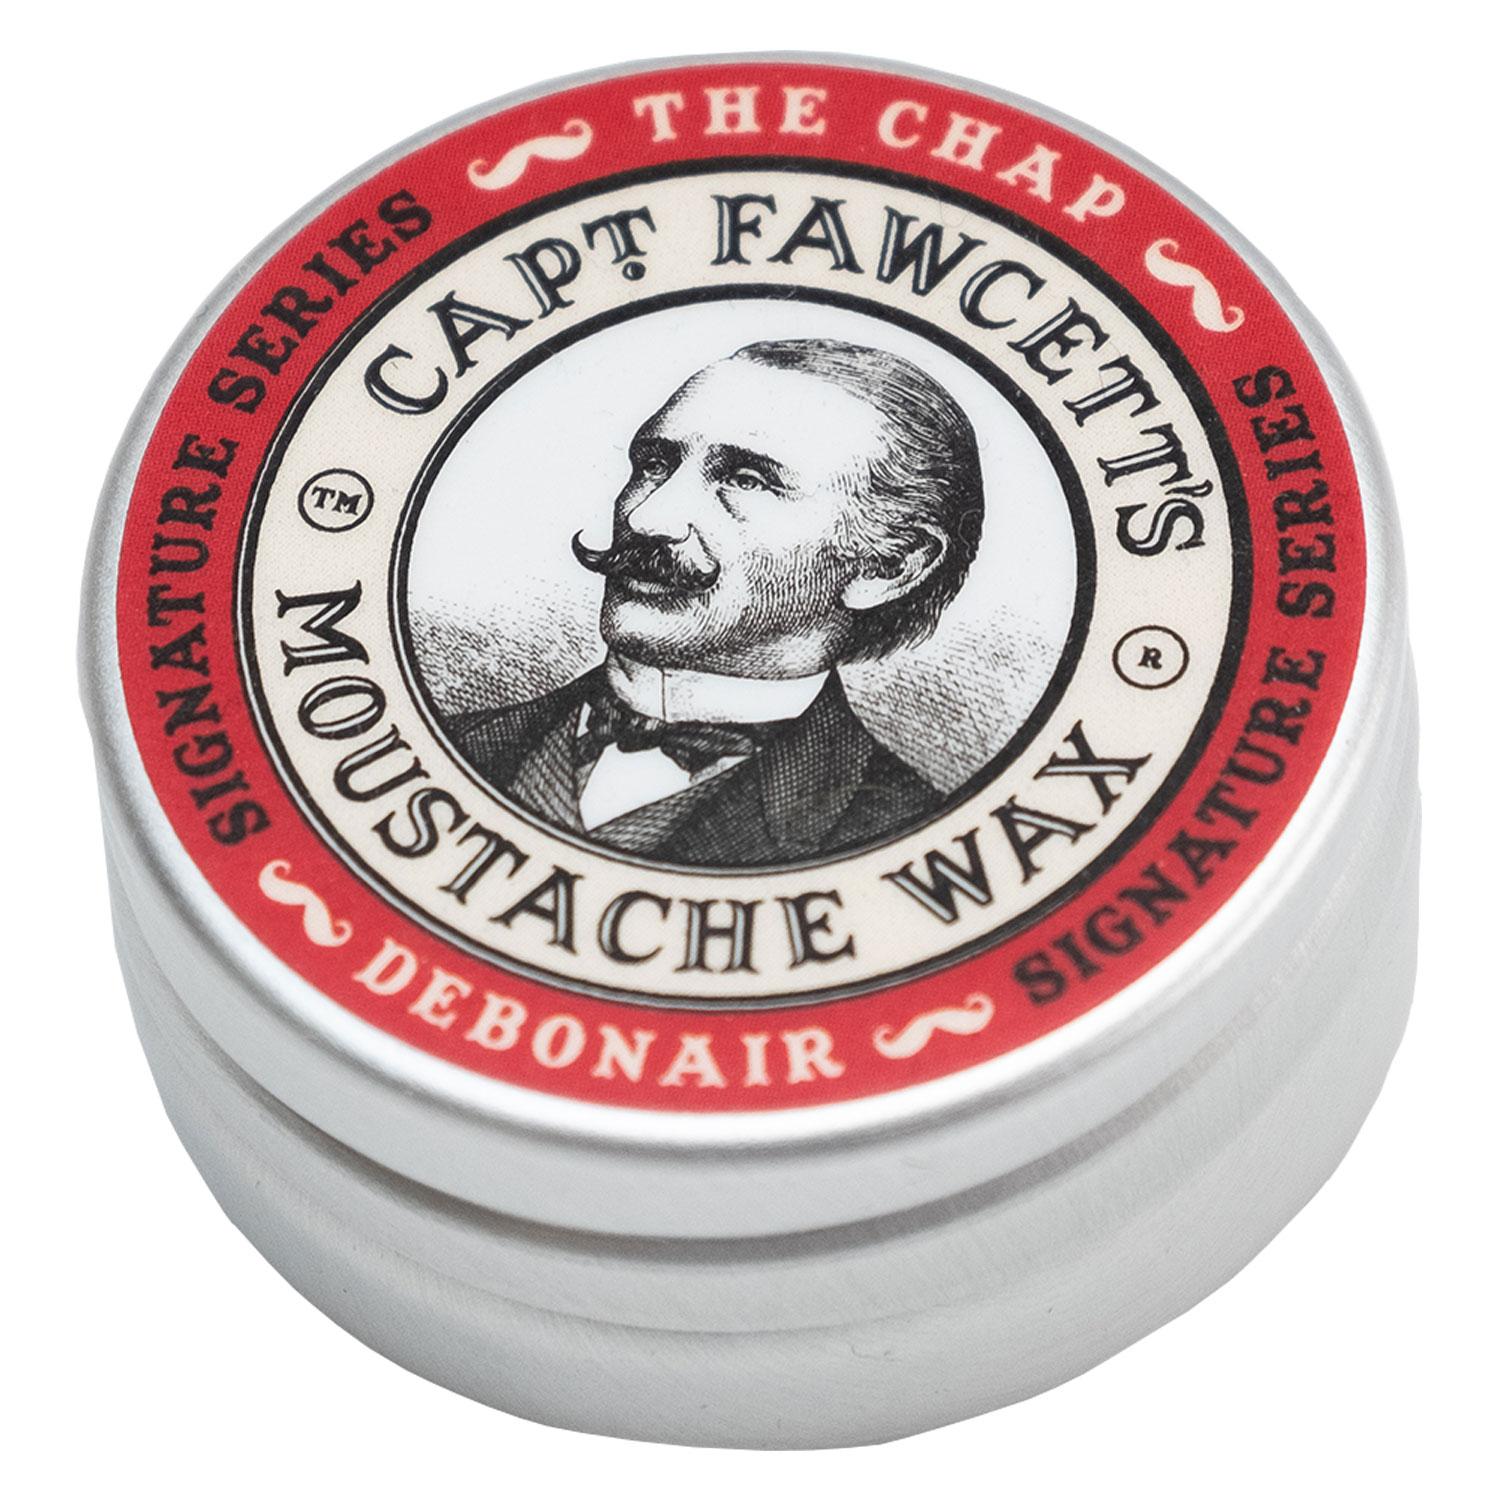 Capt. Fawcett Care - The Chap Debonair Moustache Wax